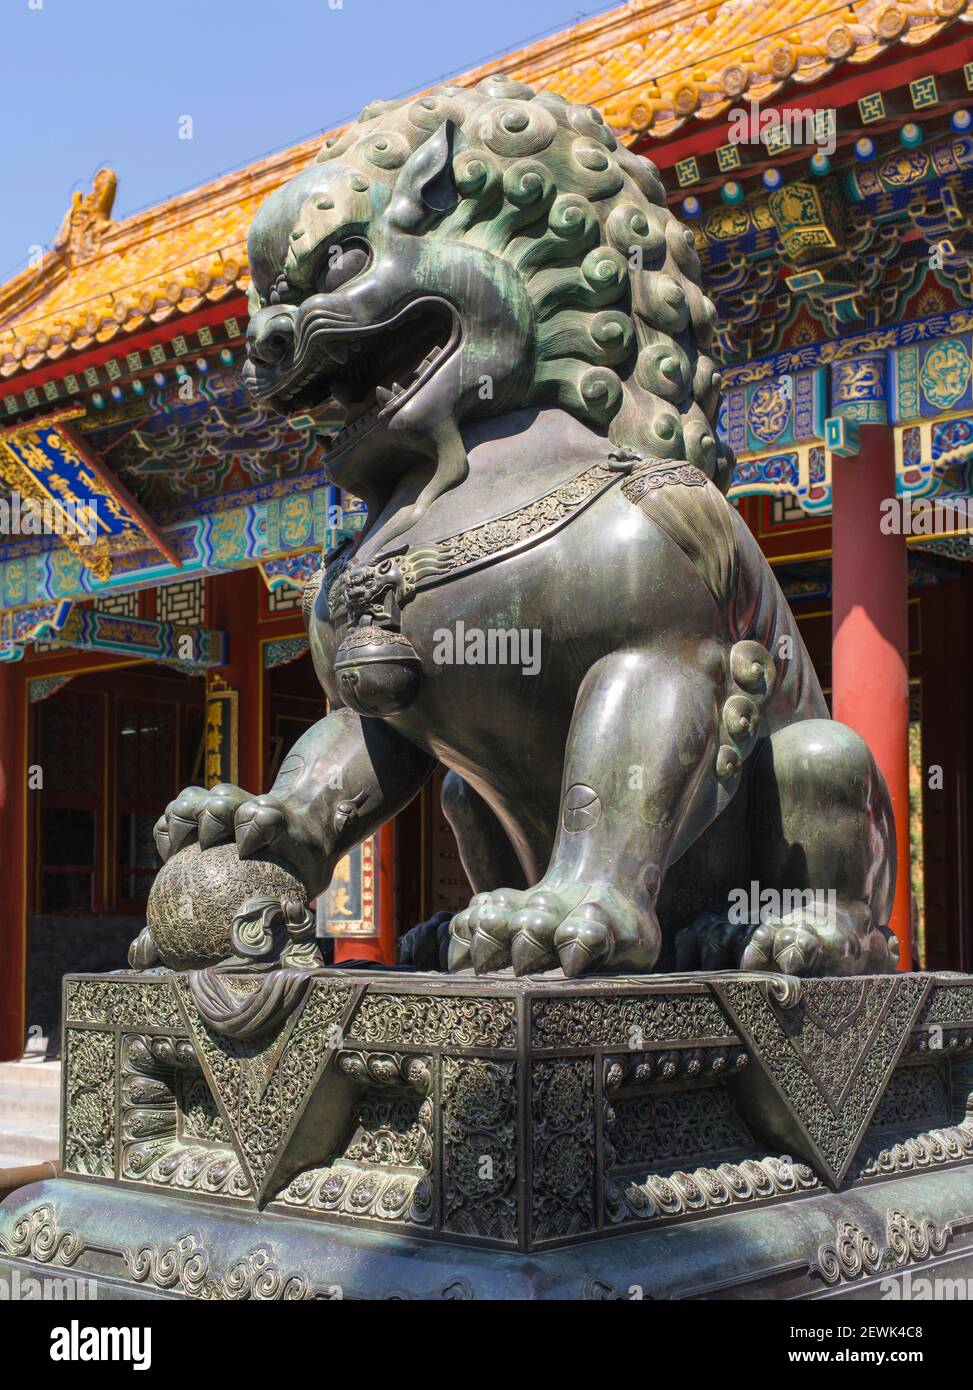 León de bronce. El Palacio de Verano. Pekín. Los leones guardianes chinos siempre se crean en parejas, con el macho jugando con una pelota y la hembra Foto de stock